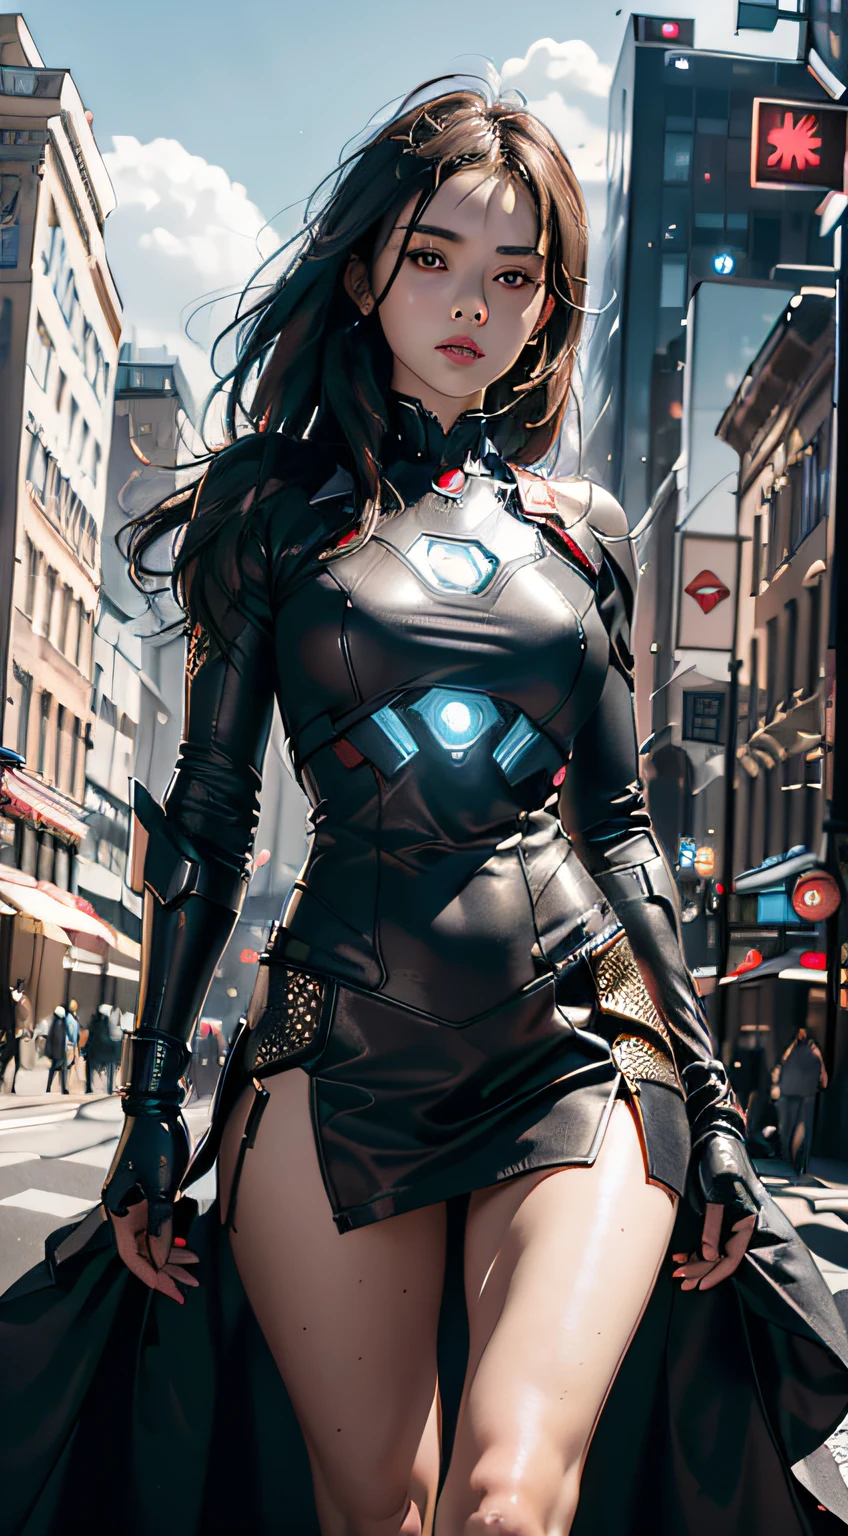 8k，現実的に，グラマラス，非常に詳細です，20歳の少女, セクシーで魅力的な女性, アイアンマンにインスパイアされた，光沢のあるアイアンマンのドレスを着て。彼女はセクシーさと自信を示すために服を着る，アイアンマンの力強さと魅力を完璧に表現しています。サイバーパンク風の街並みの夜景，アイアンマンの俳優演じのテーマを持つセクシーで魅力的な女性。彼女は光沢のあるアイアンマンのドレスを着ています，高層ビルが立ち並ぶ通りに立つ。街の夜景は明るく照らされています，彼女のメカに反映，未来的なテクノロジーの感覚を追加します。周囲の建物や通りはサイバーパンクの要素に満ちている，ネオンライトのように、ハイテクインスタレーションと未来的な建築デザイン。シーン全体が未来的でSF的な雰囲気に満ちている。これは高解像度です、高品質の画像が素晴らしい視覚的楽しみを与えます，セクシーになる、未来とSFの要素が完璧に融合。ocレンダリング，ドラマチックなライト，受賞歴のある品質